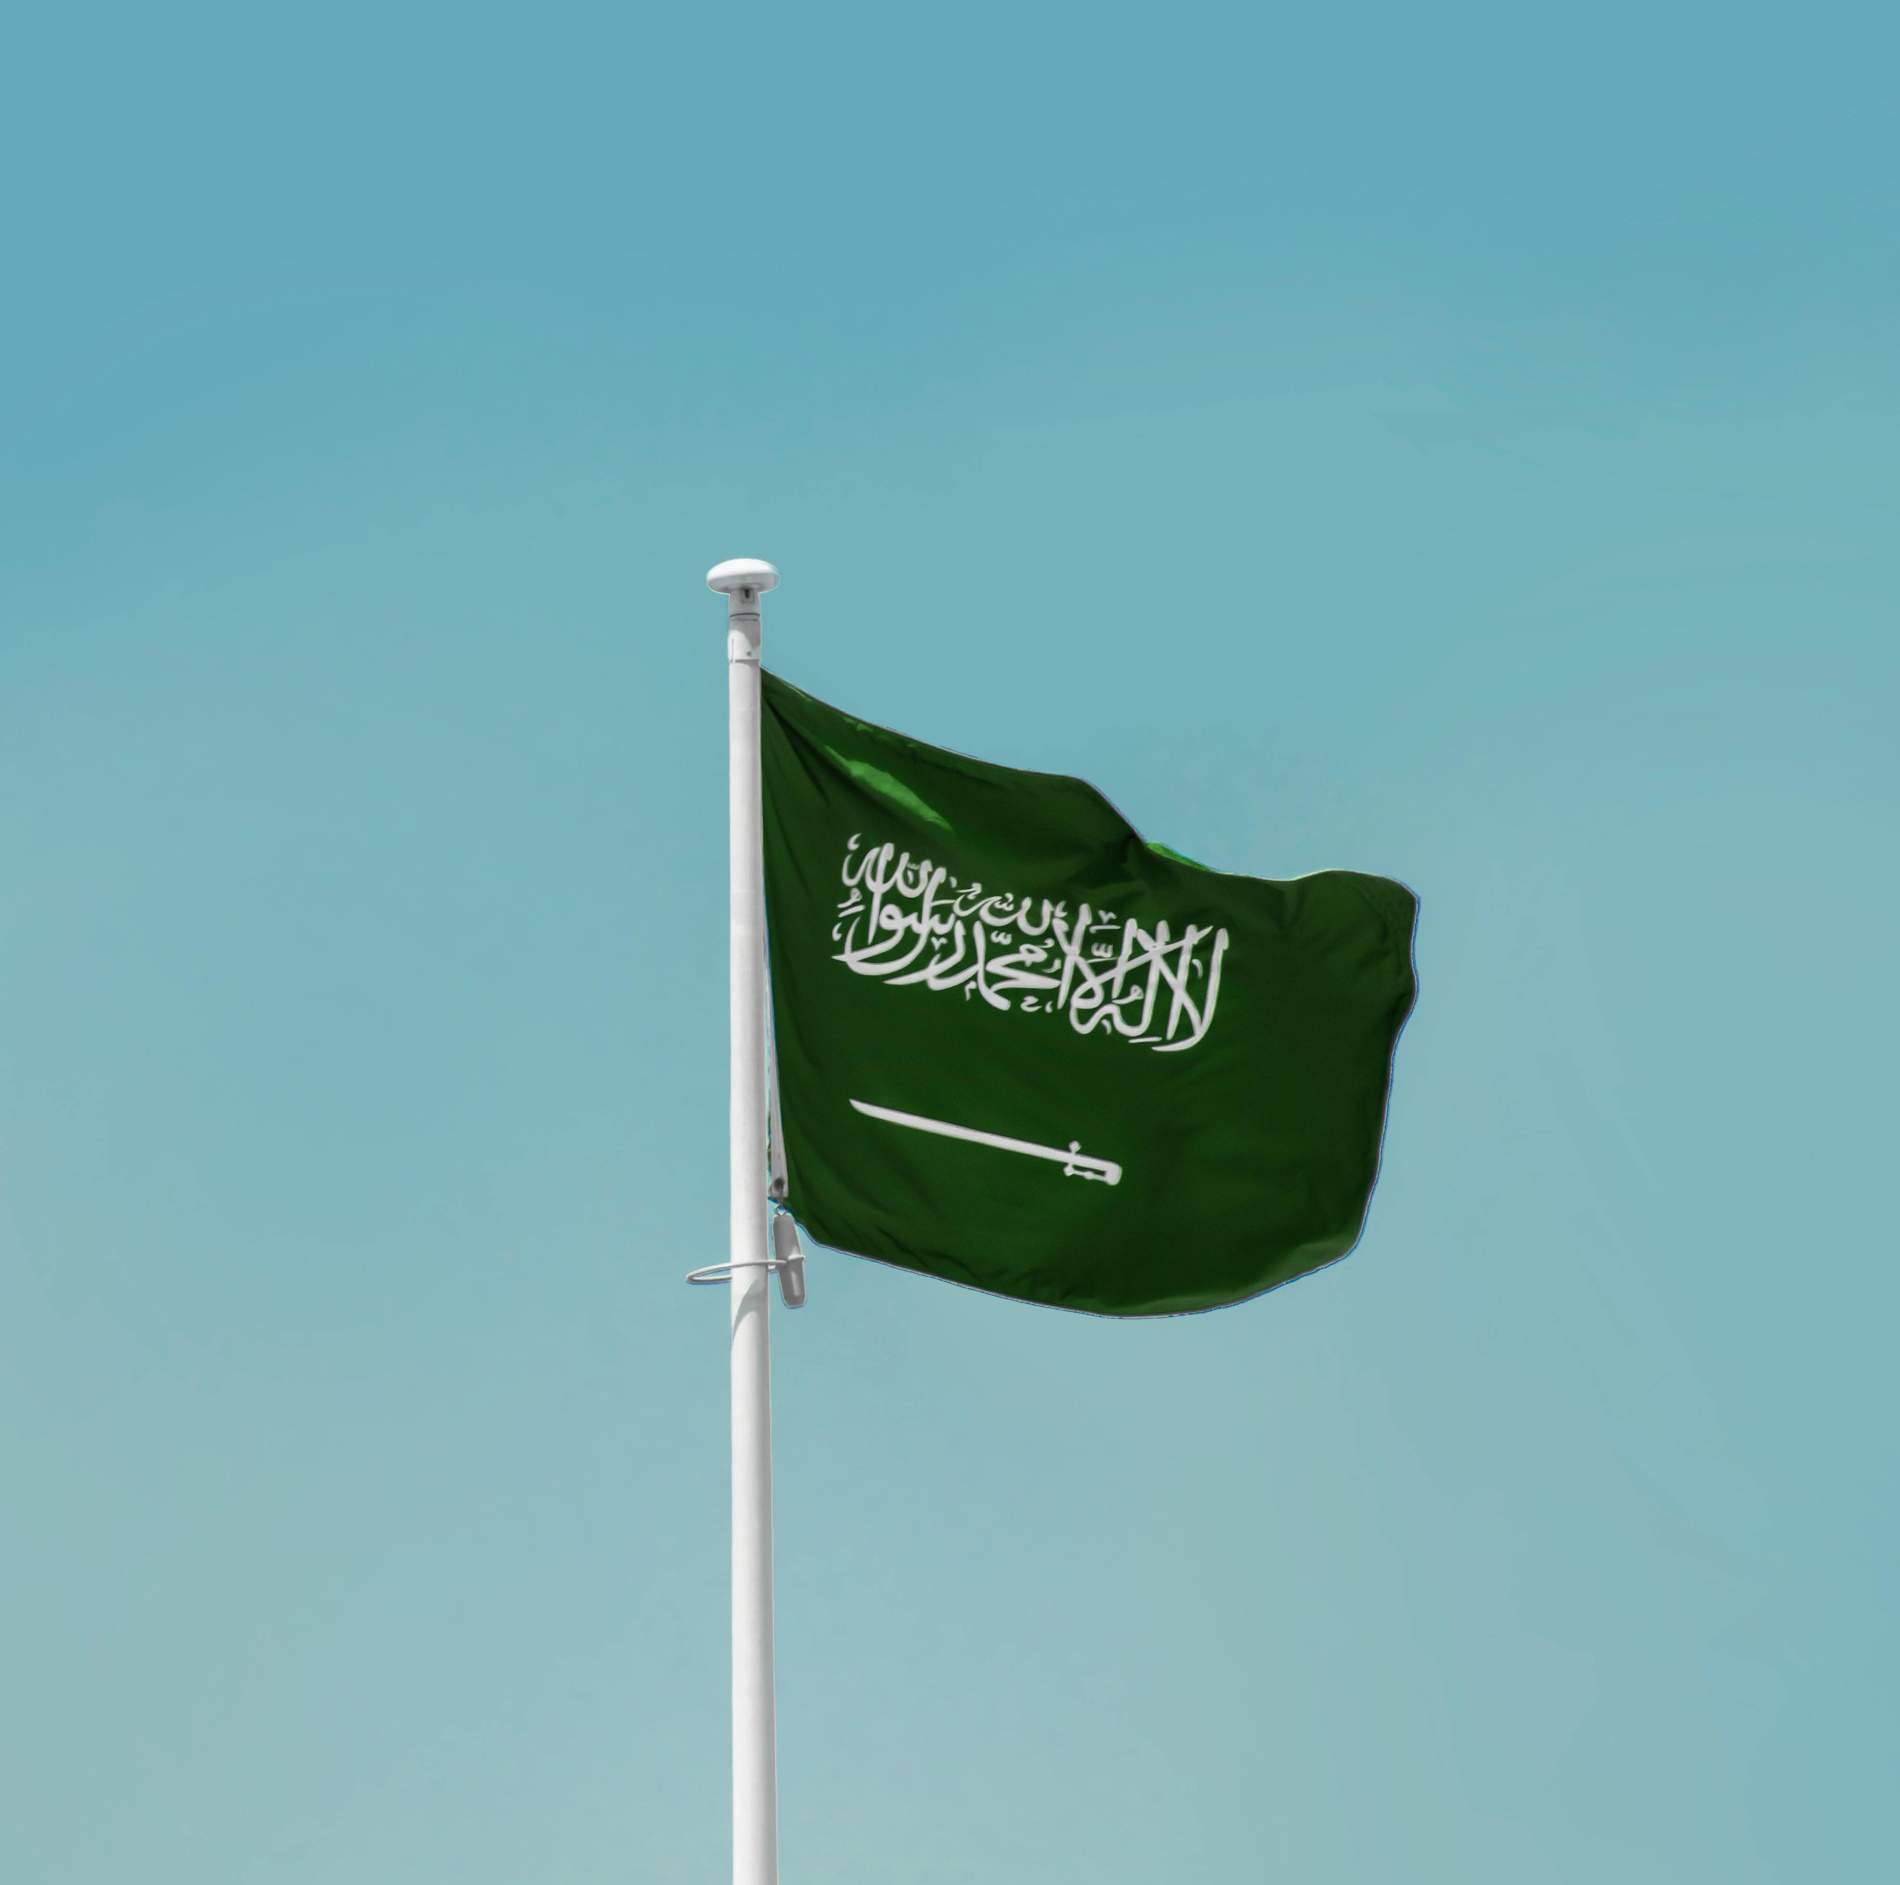 L'Aràbia Saudita subratlla la necessitat d'una transició energètica equitativa i justa